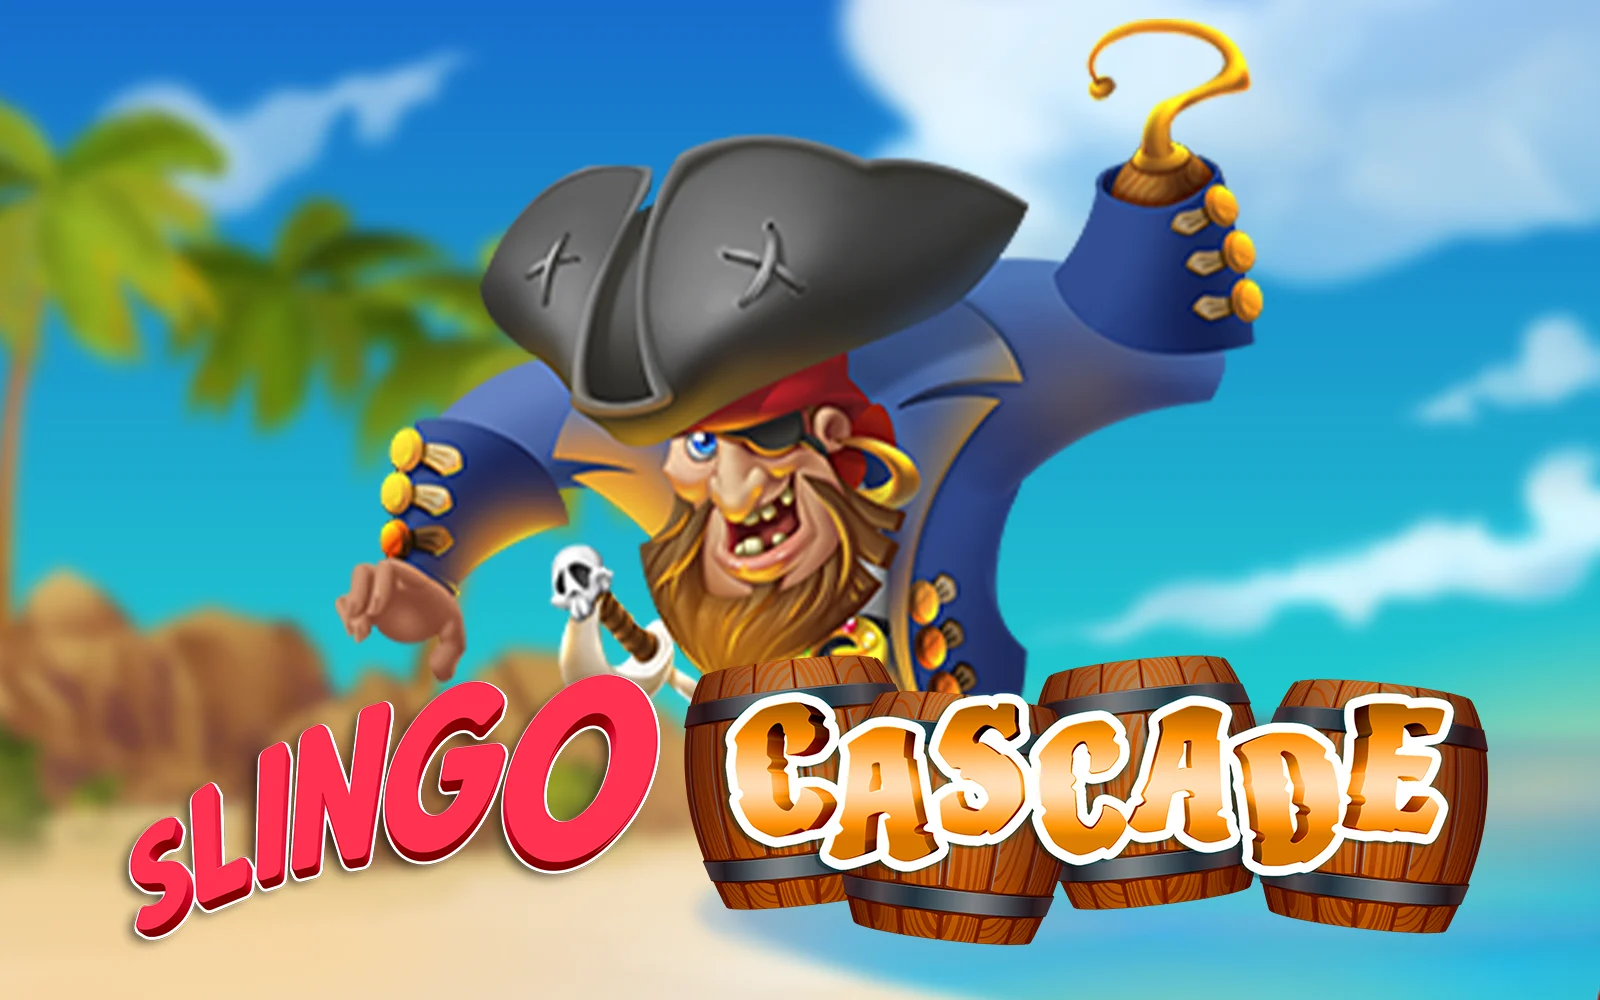 Spielen Sie Slingo Cascade auf Starcasino.be-Online-Casino